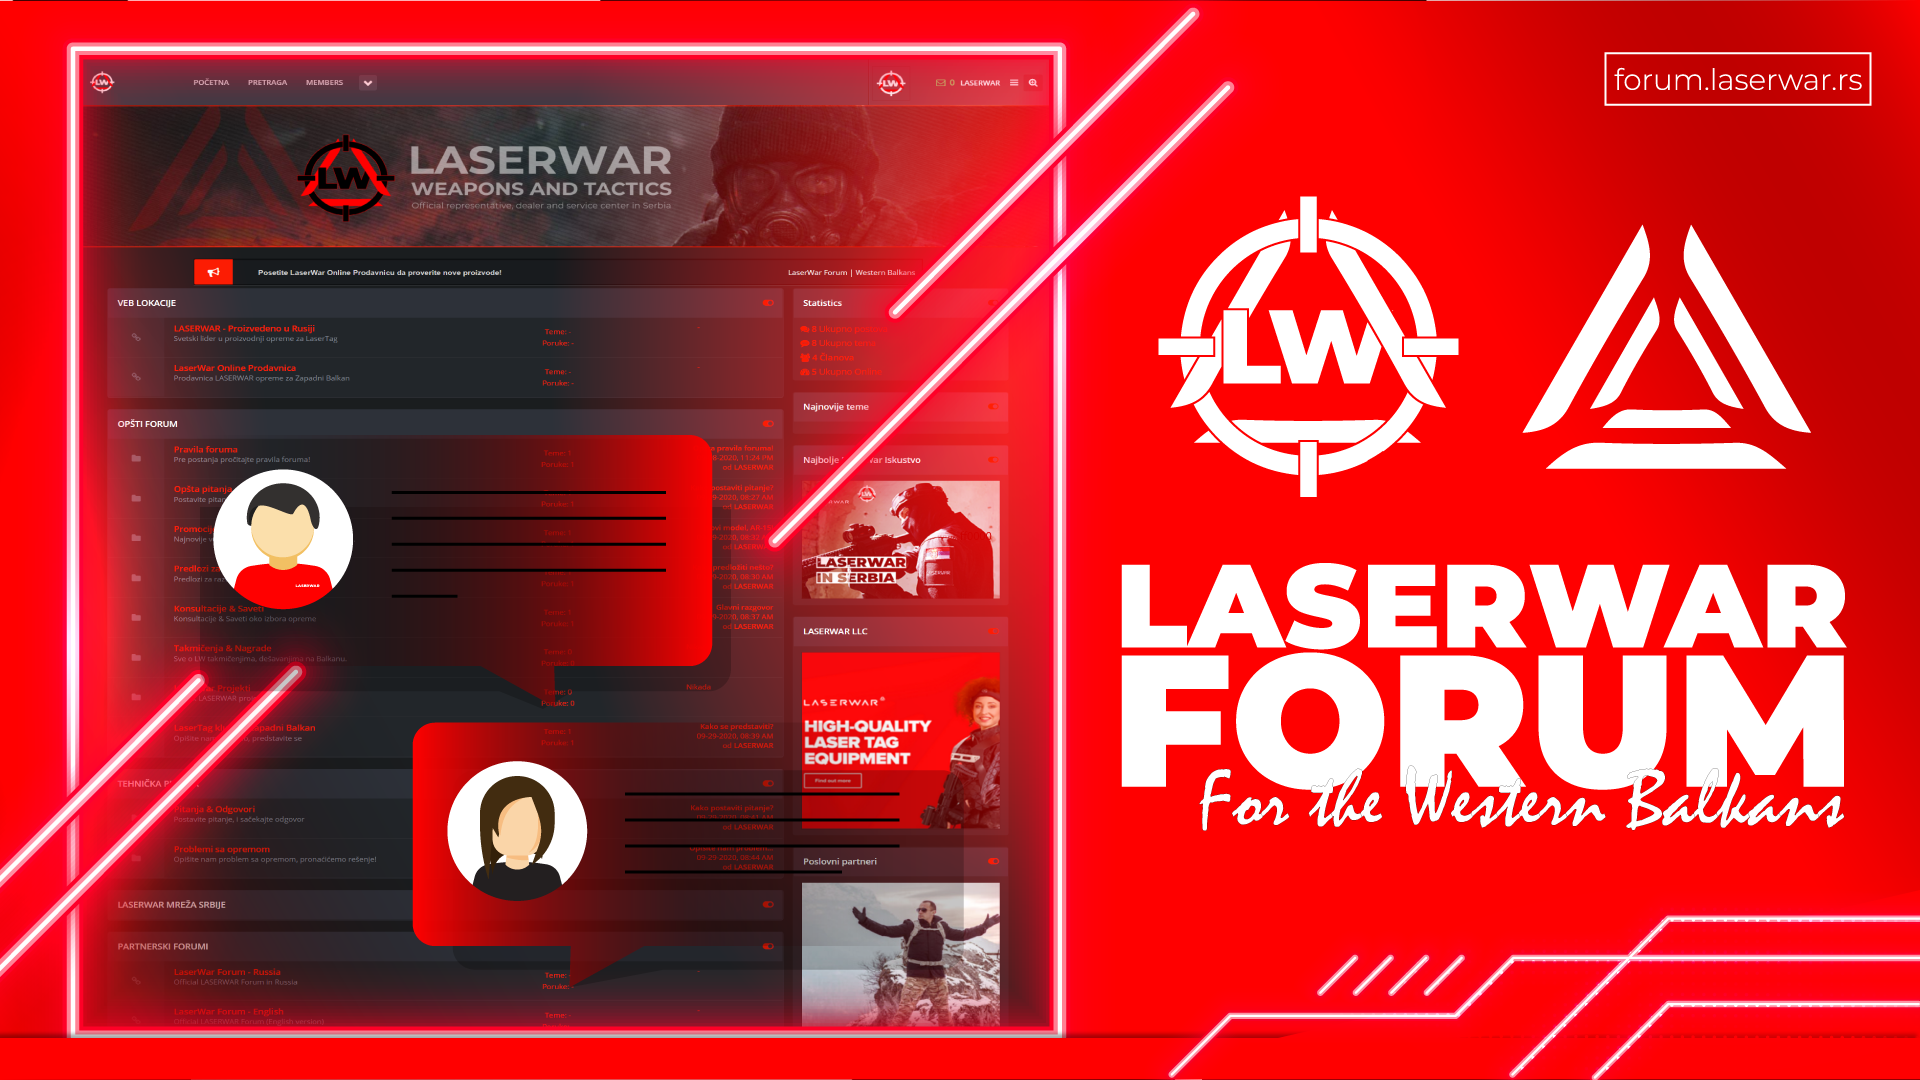 lasertag forum